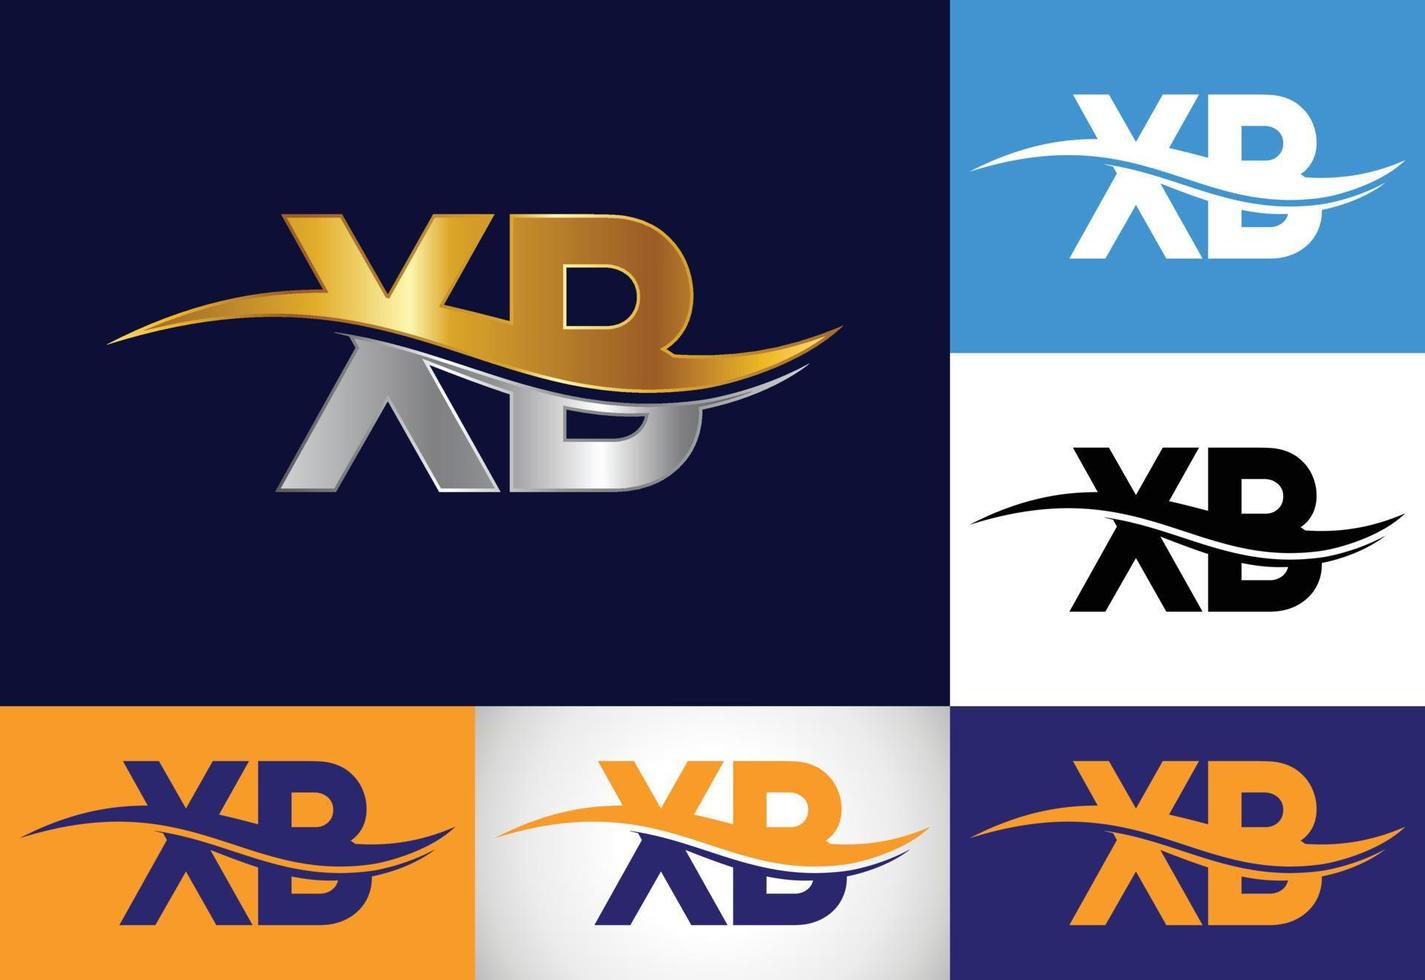 anfängliche monogrammbuchstabe xb logo design vektorvorlage. grafisches Alphabet-Symbol. vektor